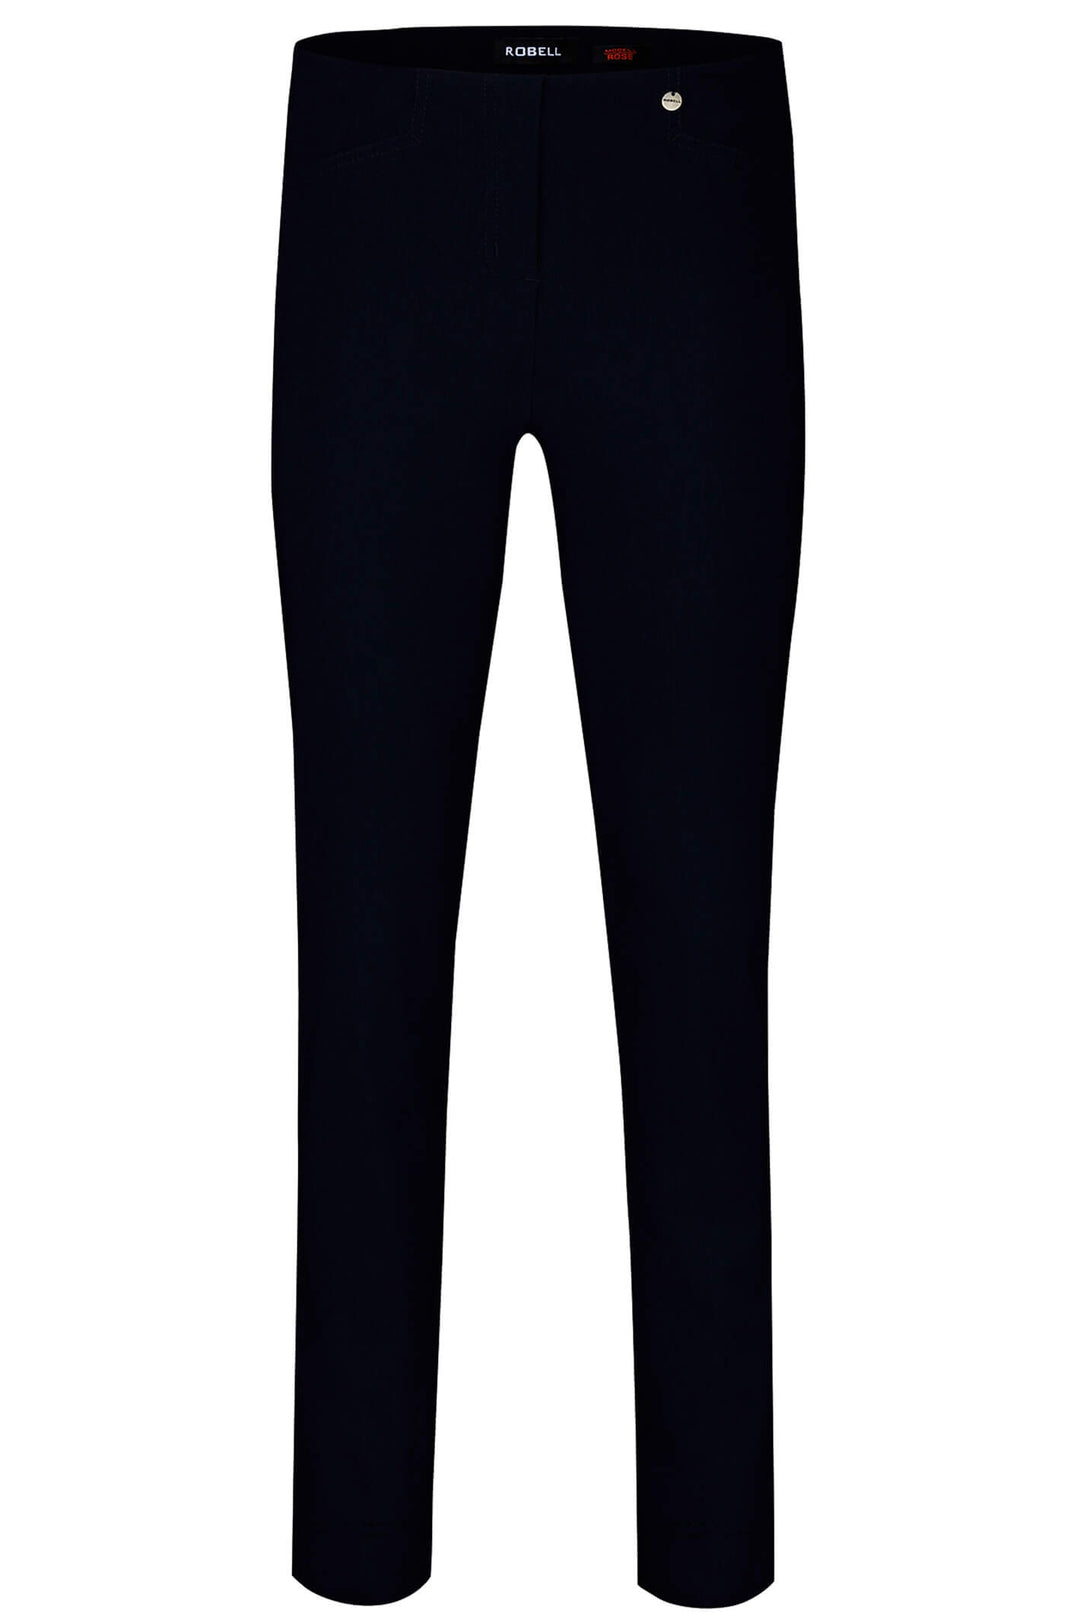 Robell 51673-5499-90 Rose Black Full Length Slim Fit Trousers - Dotique